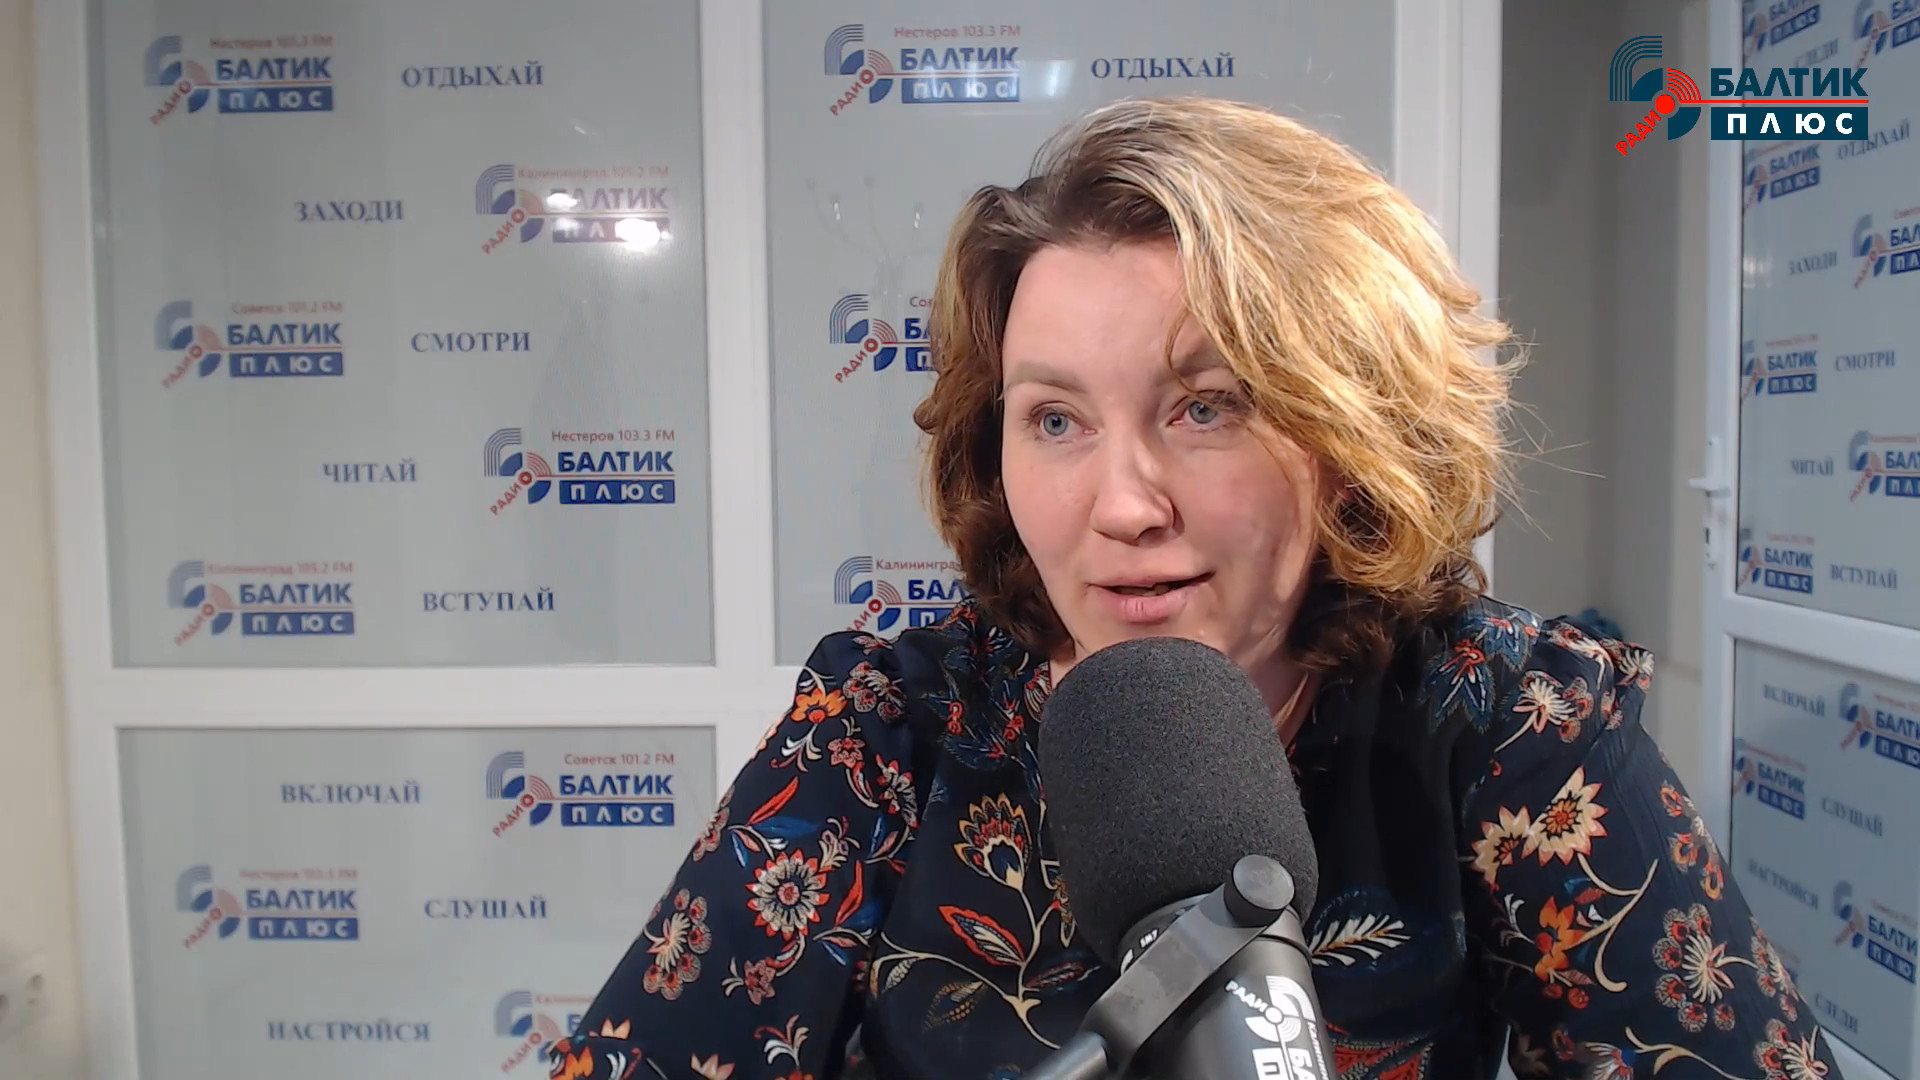 Ольга Тесленко: Туристы в Калининграде получают смс от родственников с призывом вернуться домой